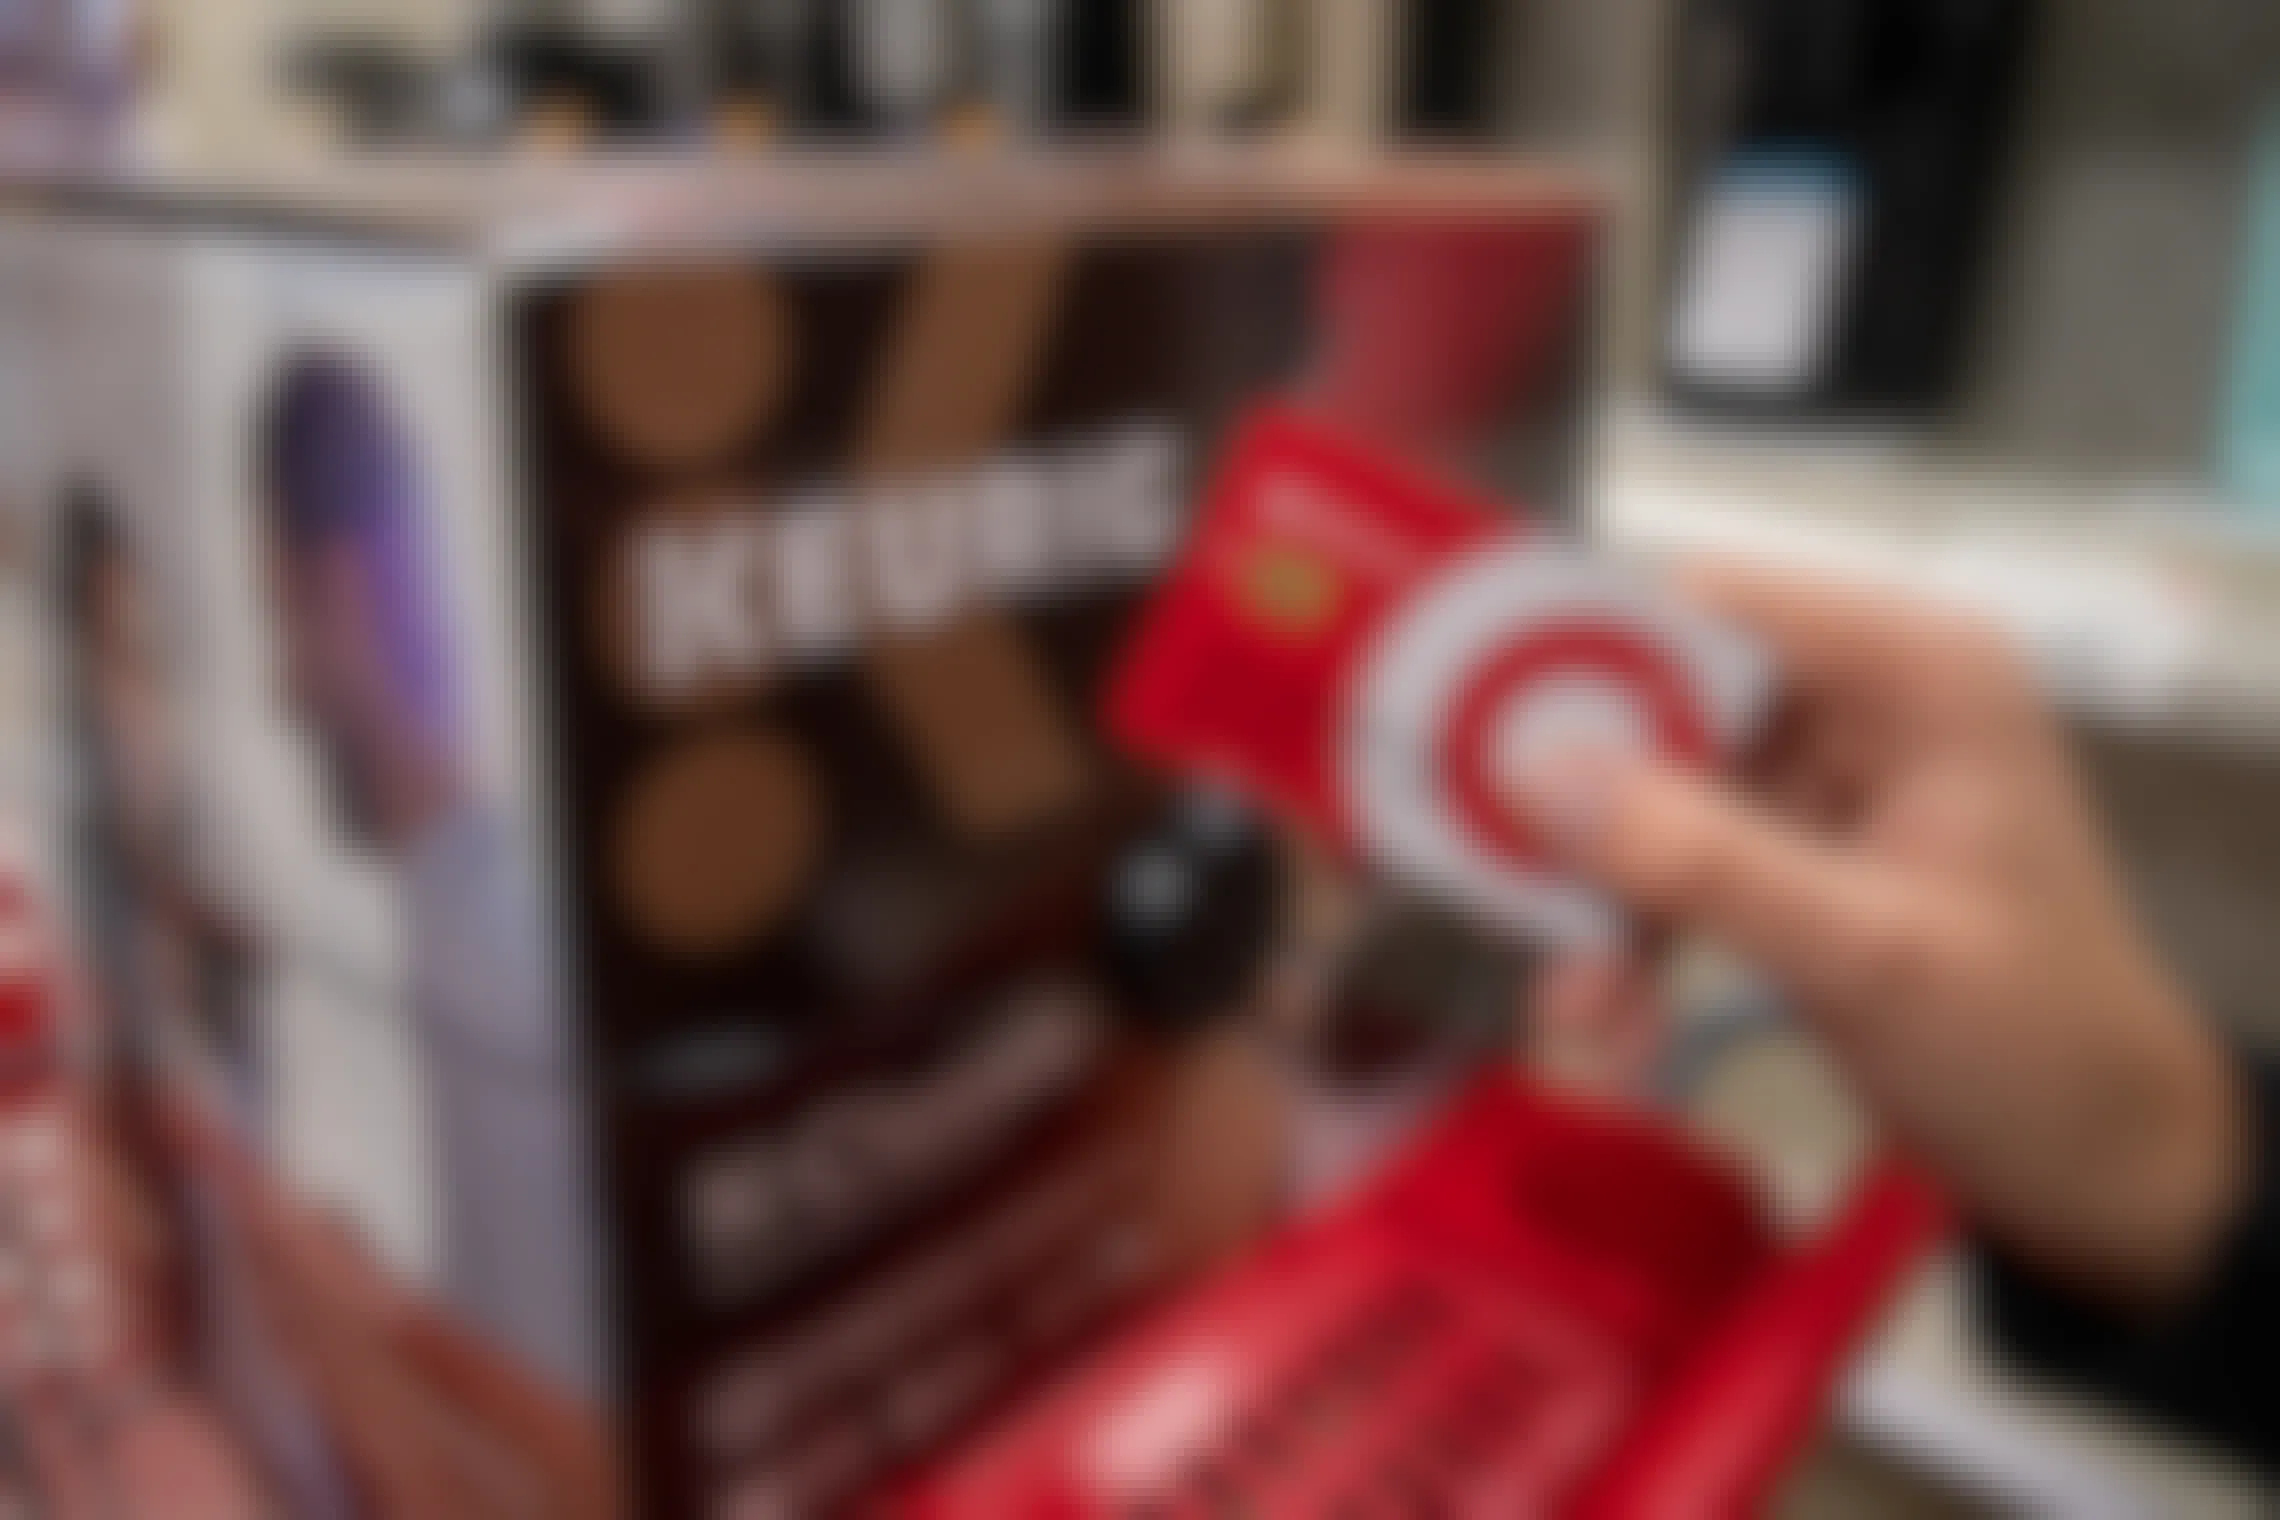 Target red card held next to a Keurig coffee maker inside Target.